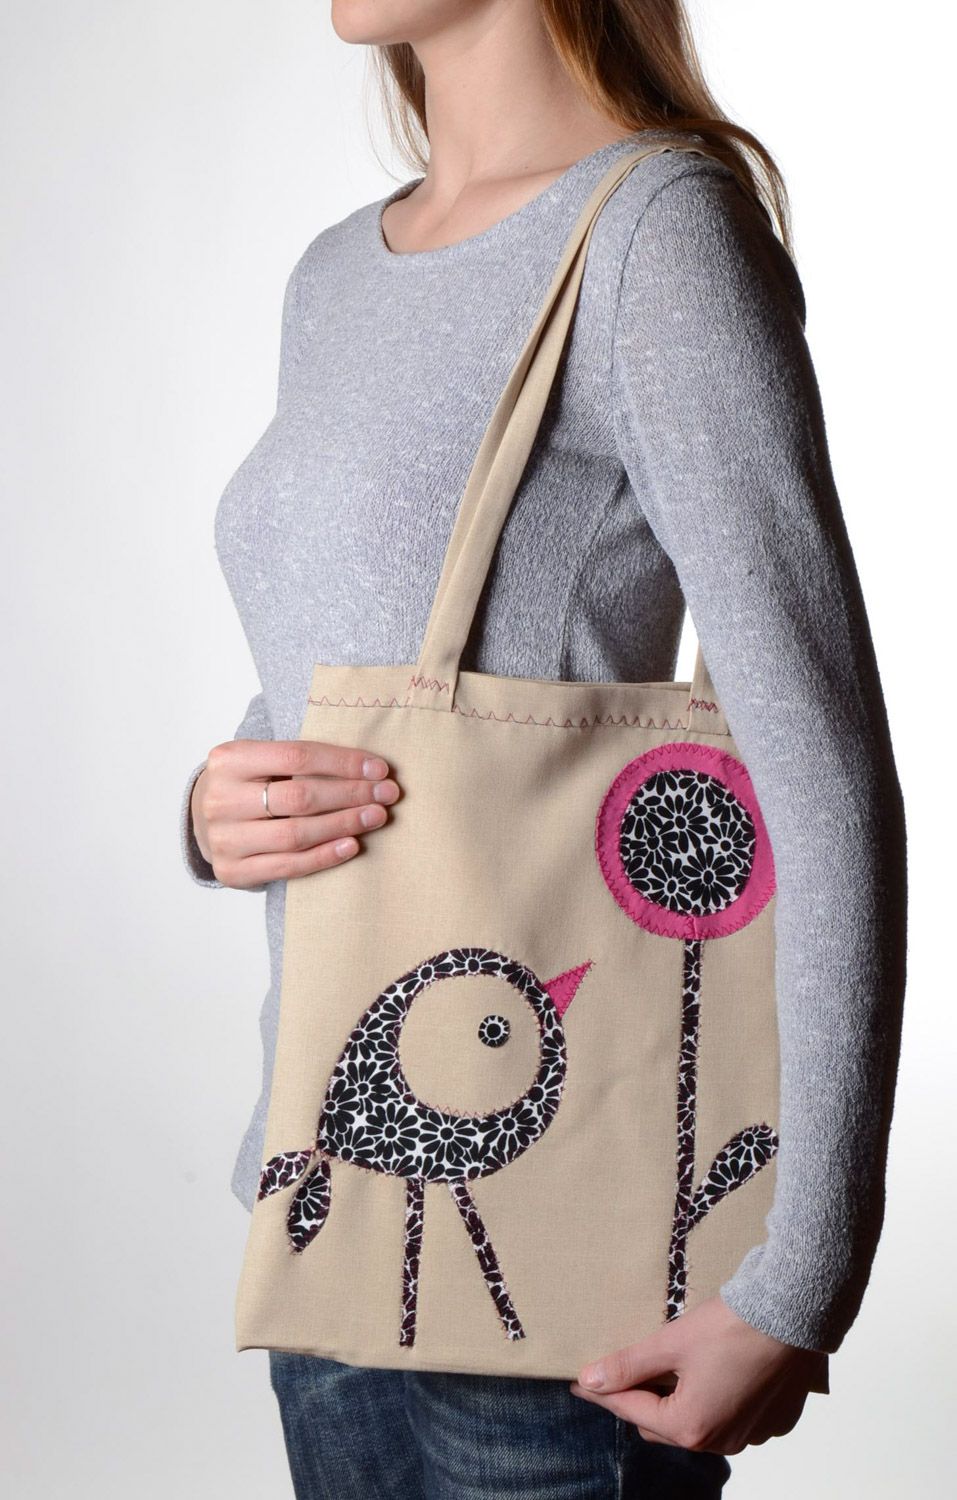 Handmade originelle Stoff Tasche mit Vogel Applikation in Beige geräumig foto 1